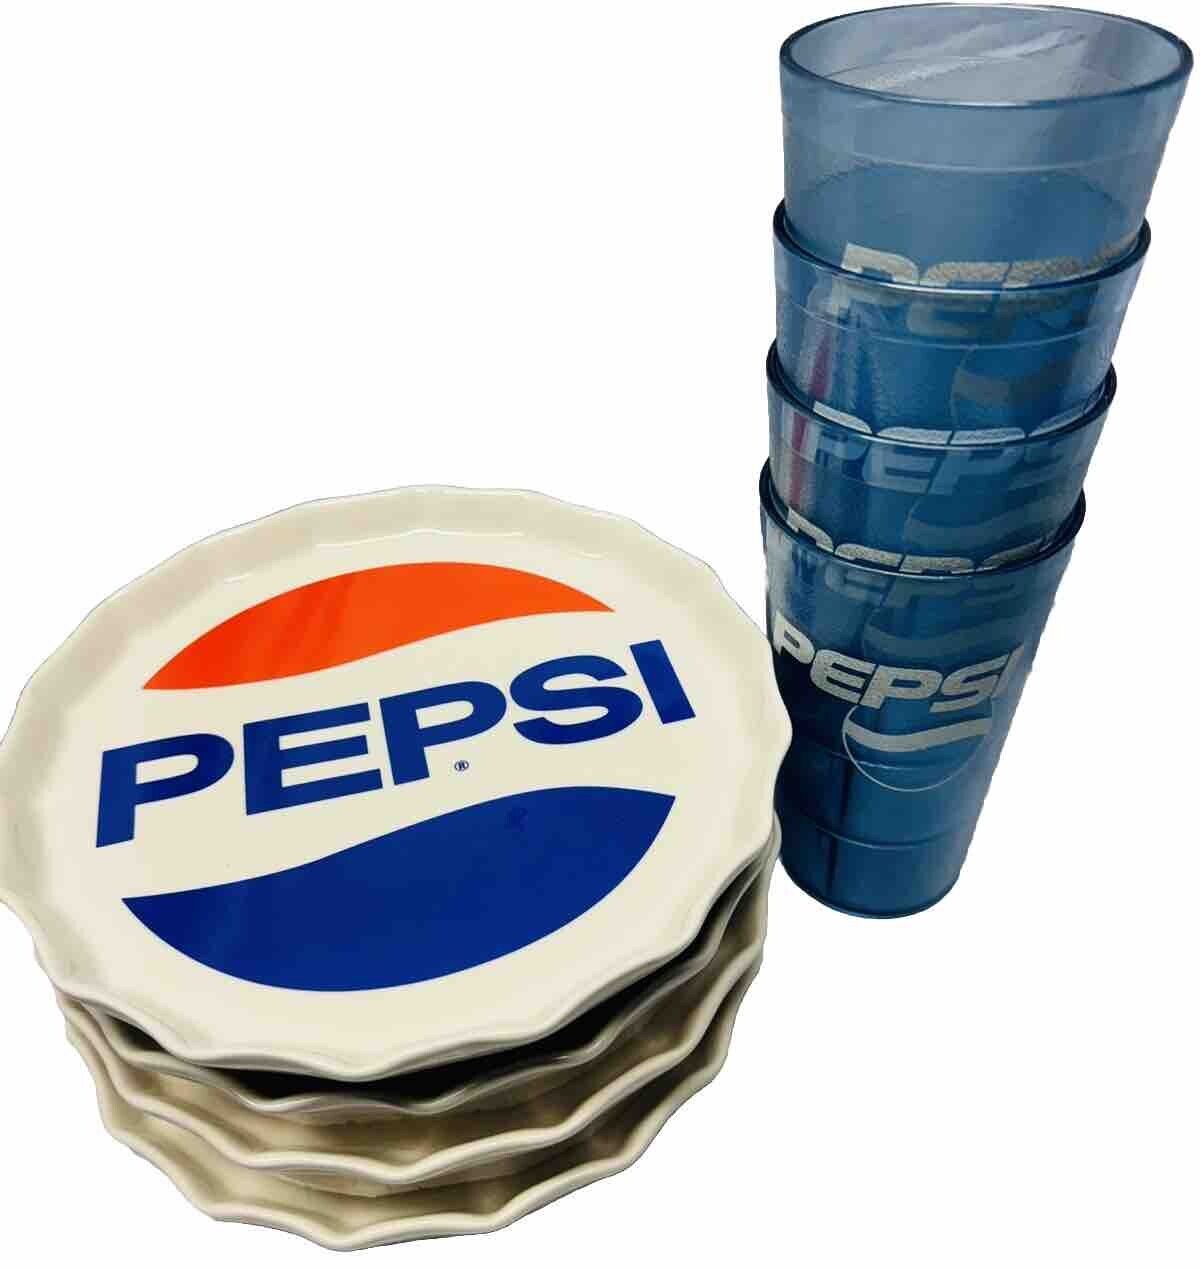 Vintage Pepsi Cola Heritage Collection Porcelain Bottle Cap Plates w/ 16oz Cups